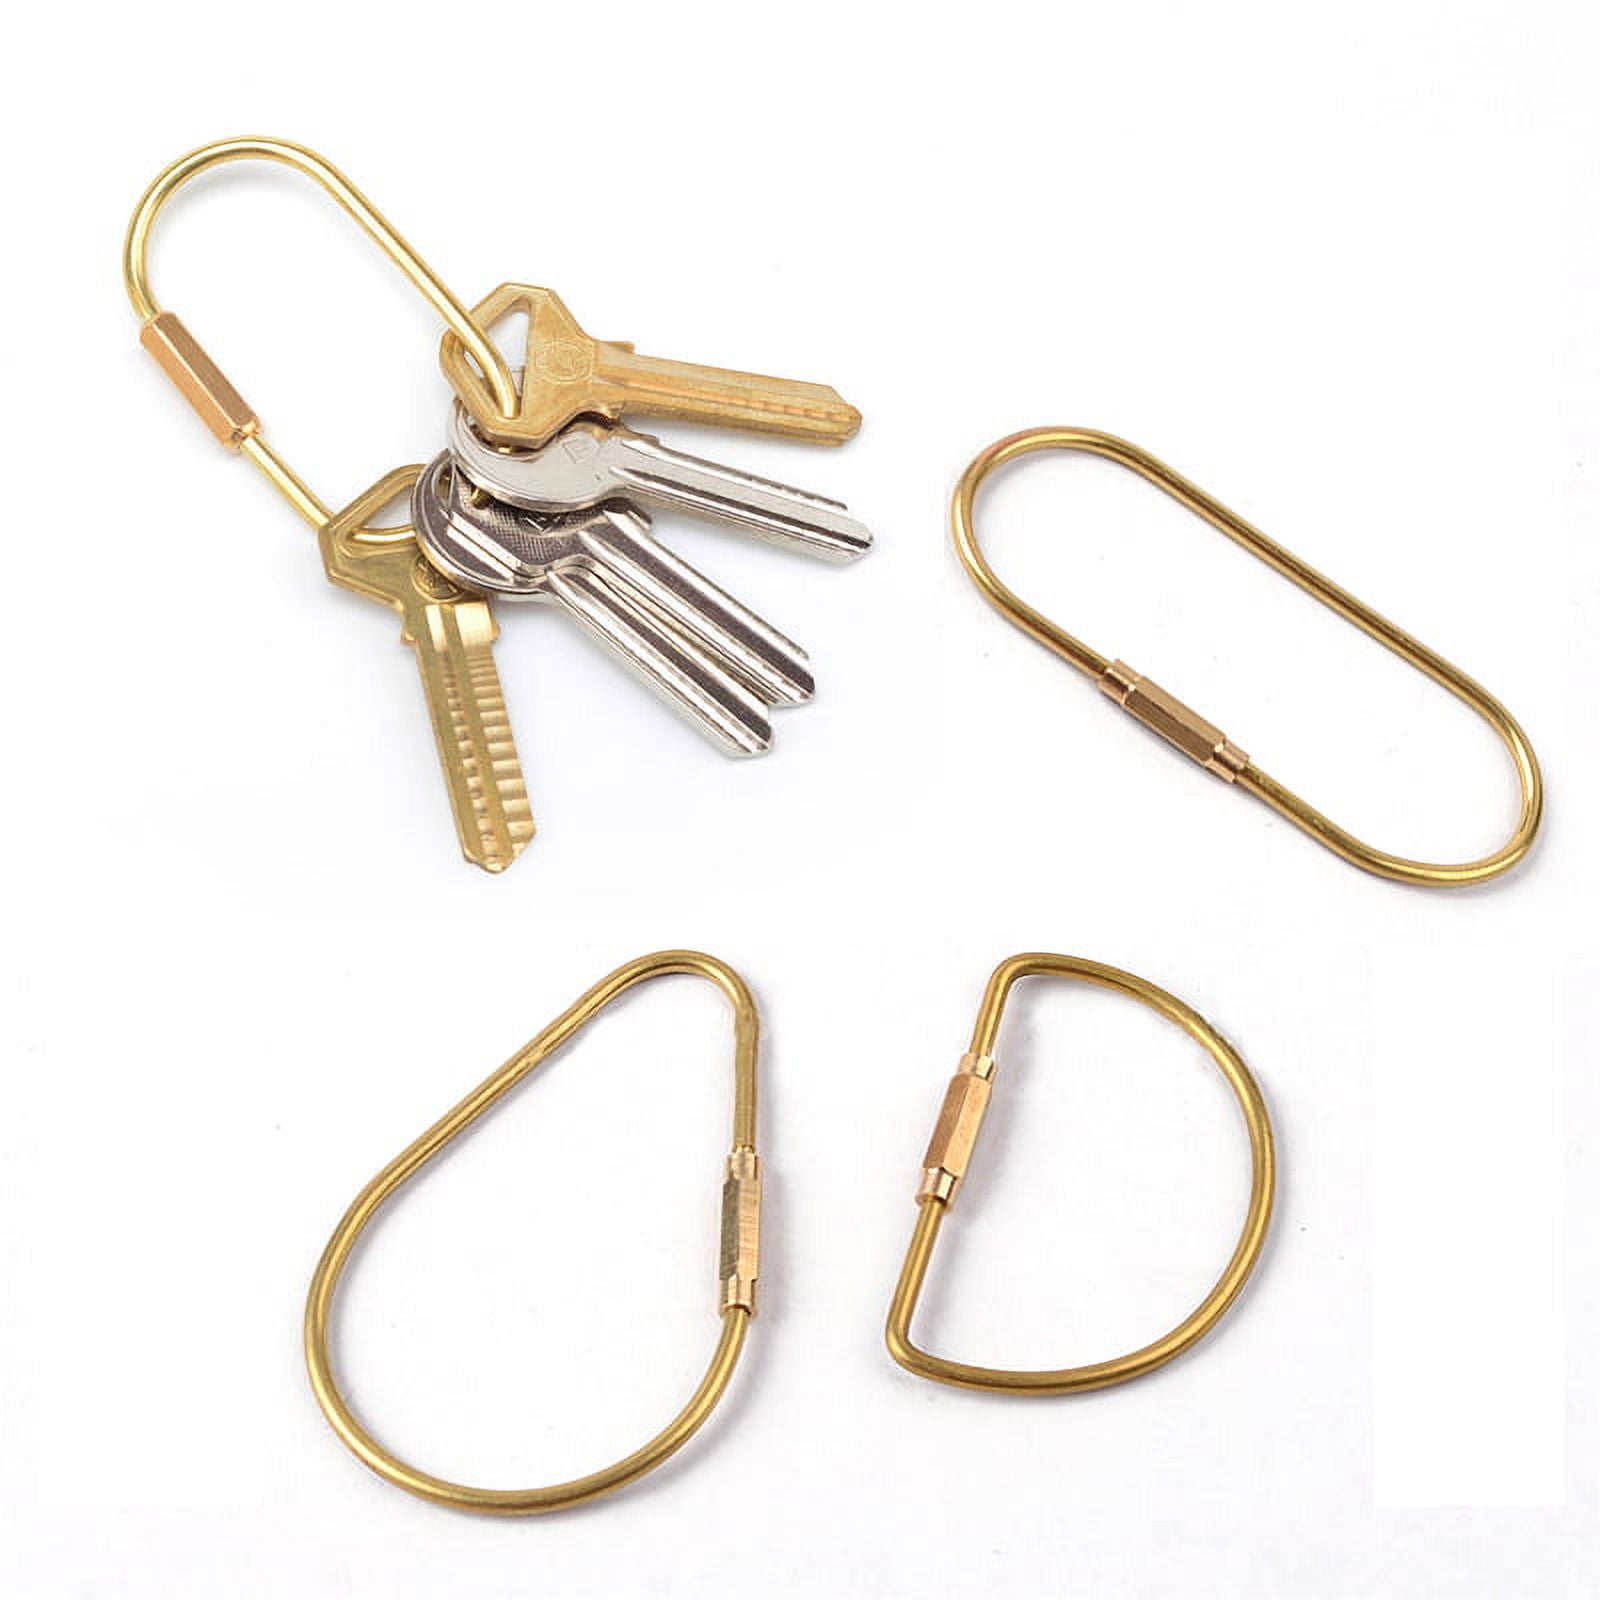 Tooloflife Brass Keychain EDC Portable Keychain Key Ring Golden Decoration, Adult Unisex, Size: One Size